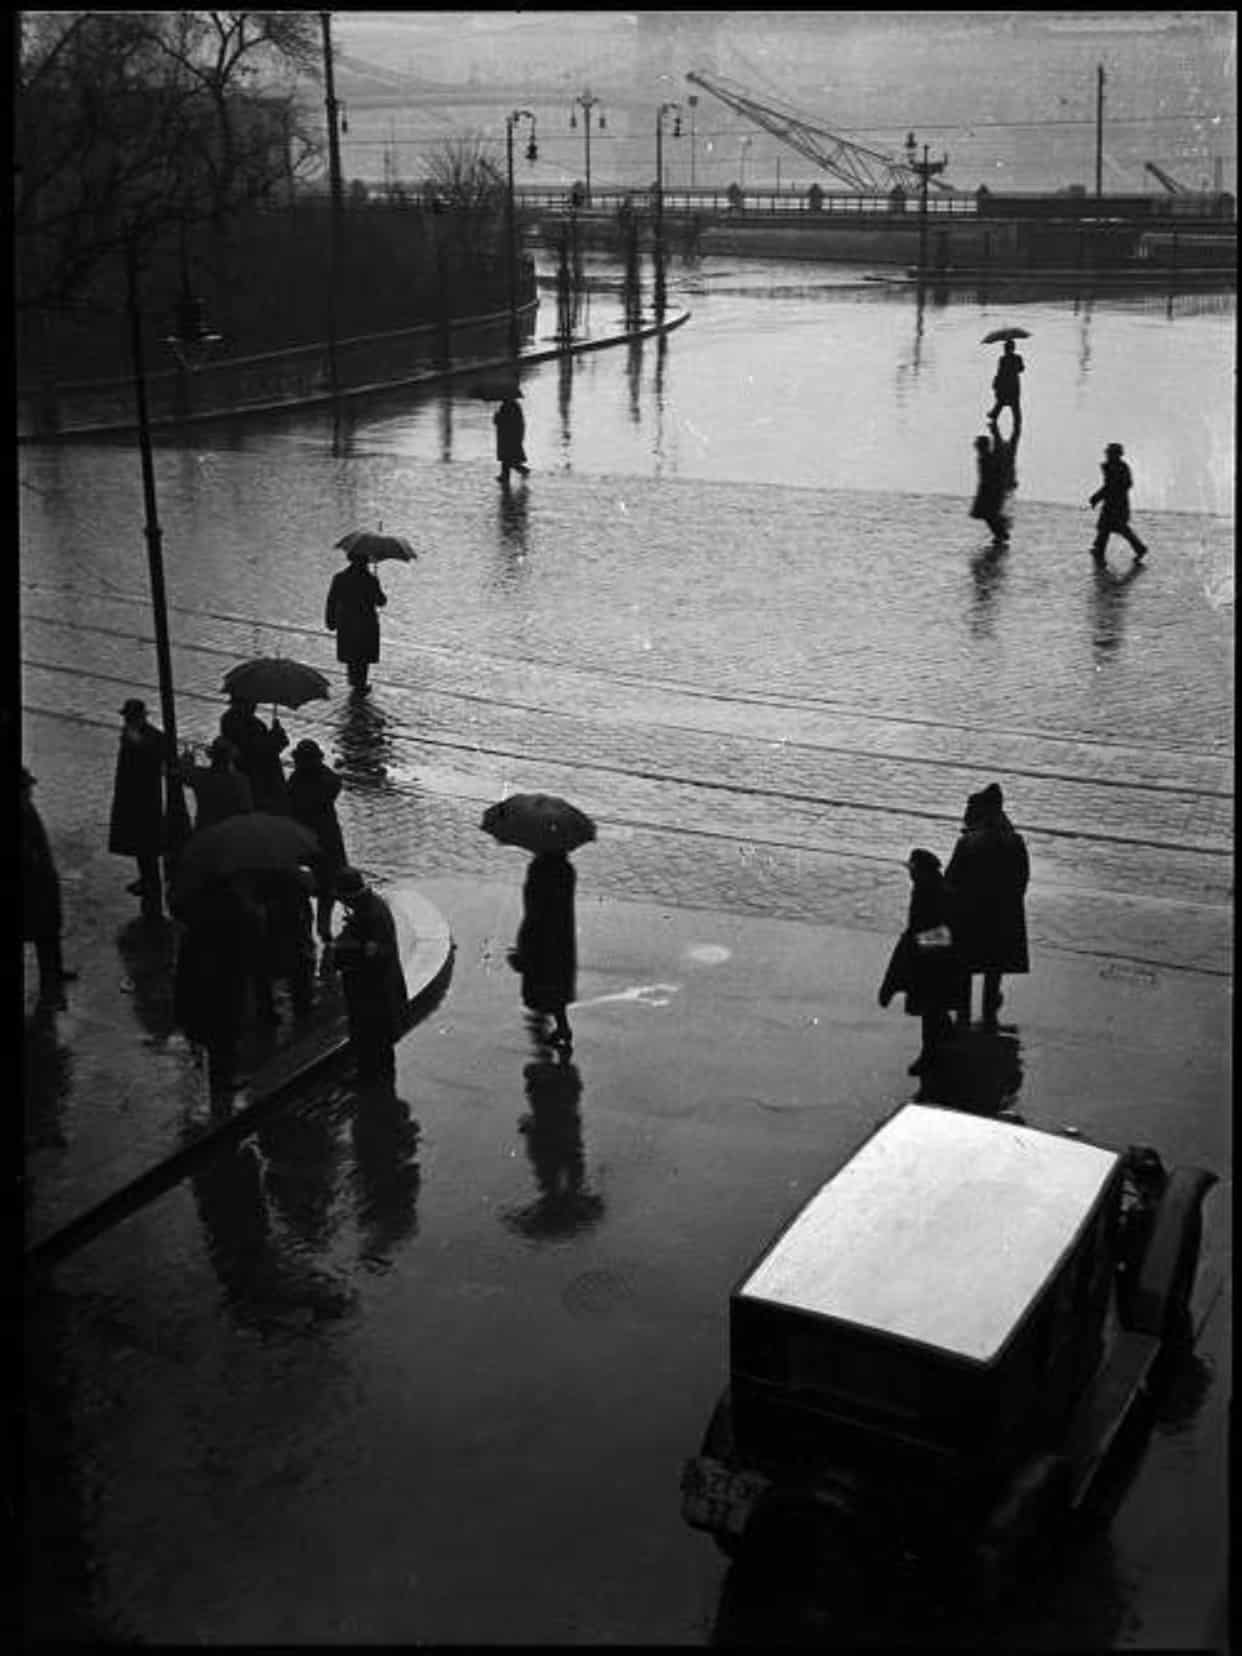 2b. Imre Kinszki, <i>Járókelők esőben</i> (“Pedestrians in the rain”), 1932 © FSZEK